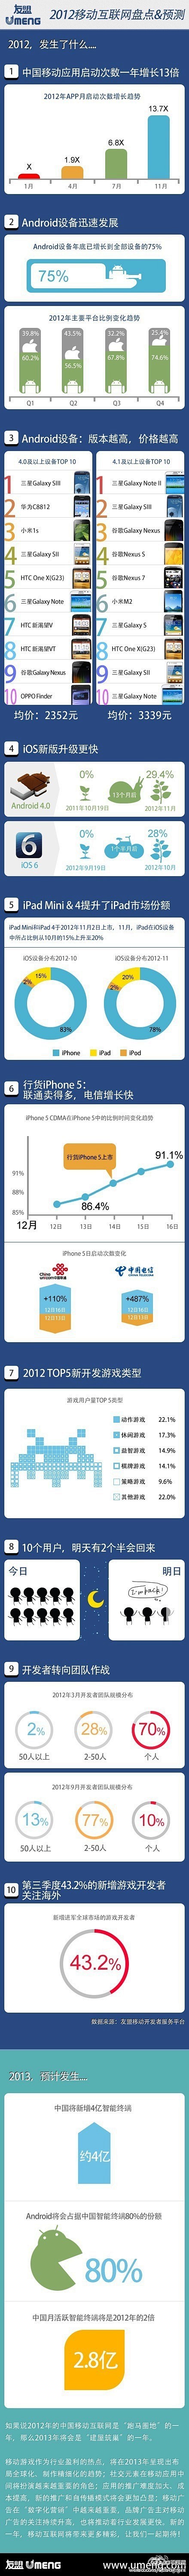 2012年中国移动互联网都发生了什么变化...